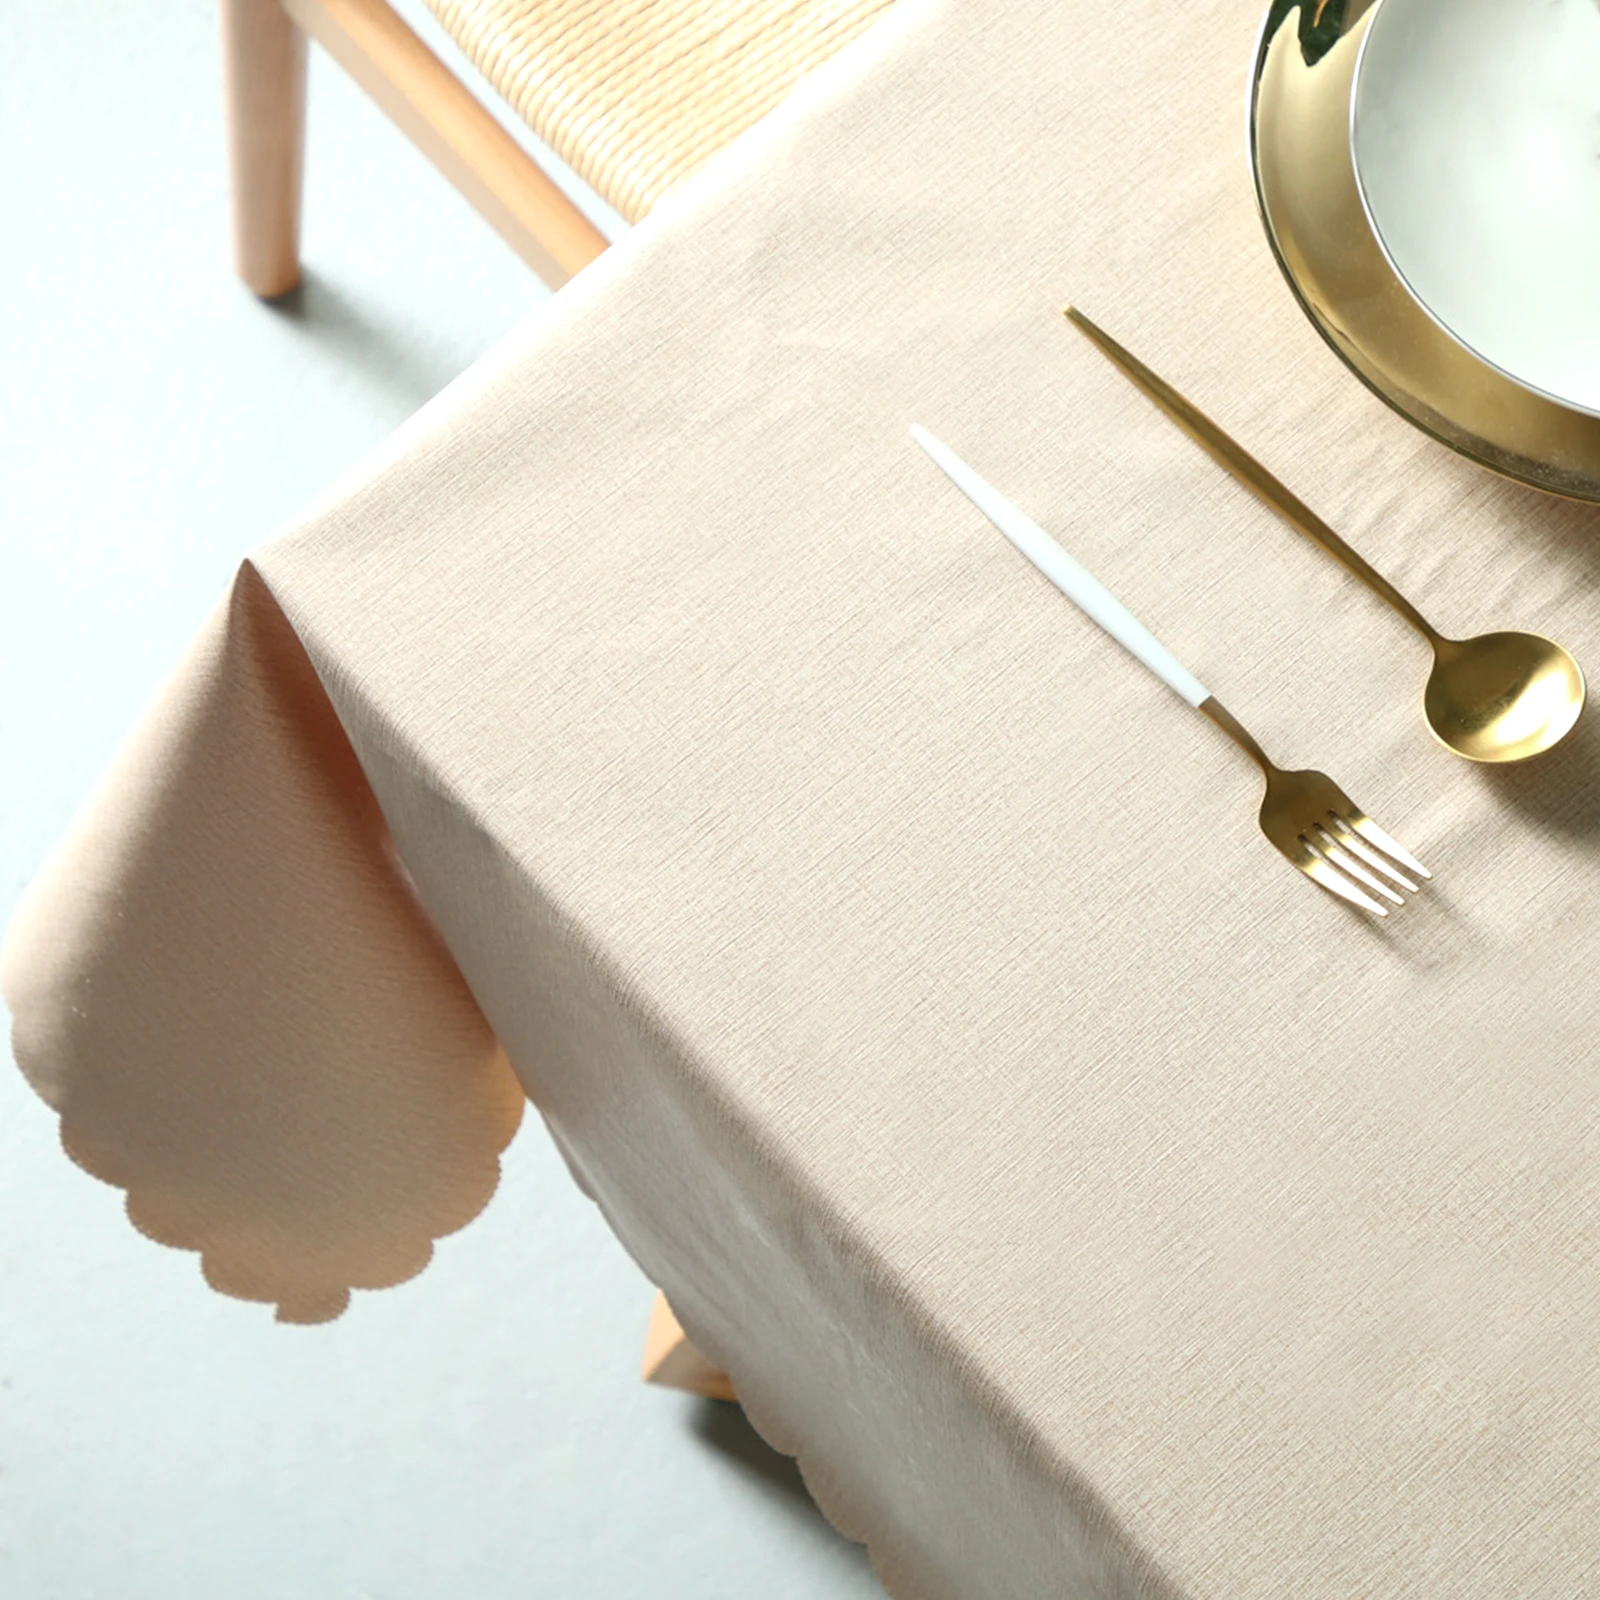 ПВХ сплошной цвет прямоугольной скатерти скатерть для обеденного стола Накладка для дома свадьбы питание пикника столовая посуда домашний текстиль